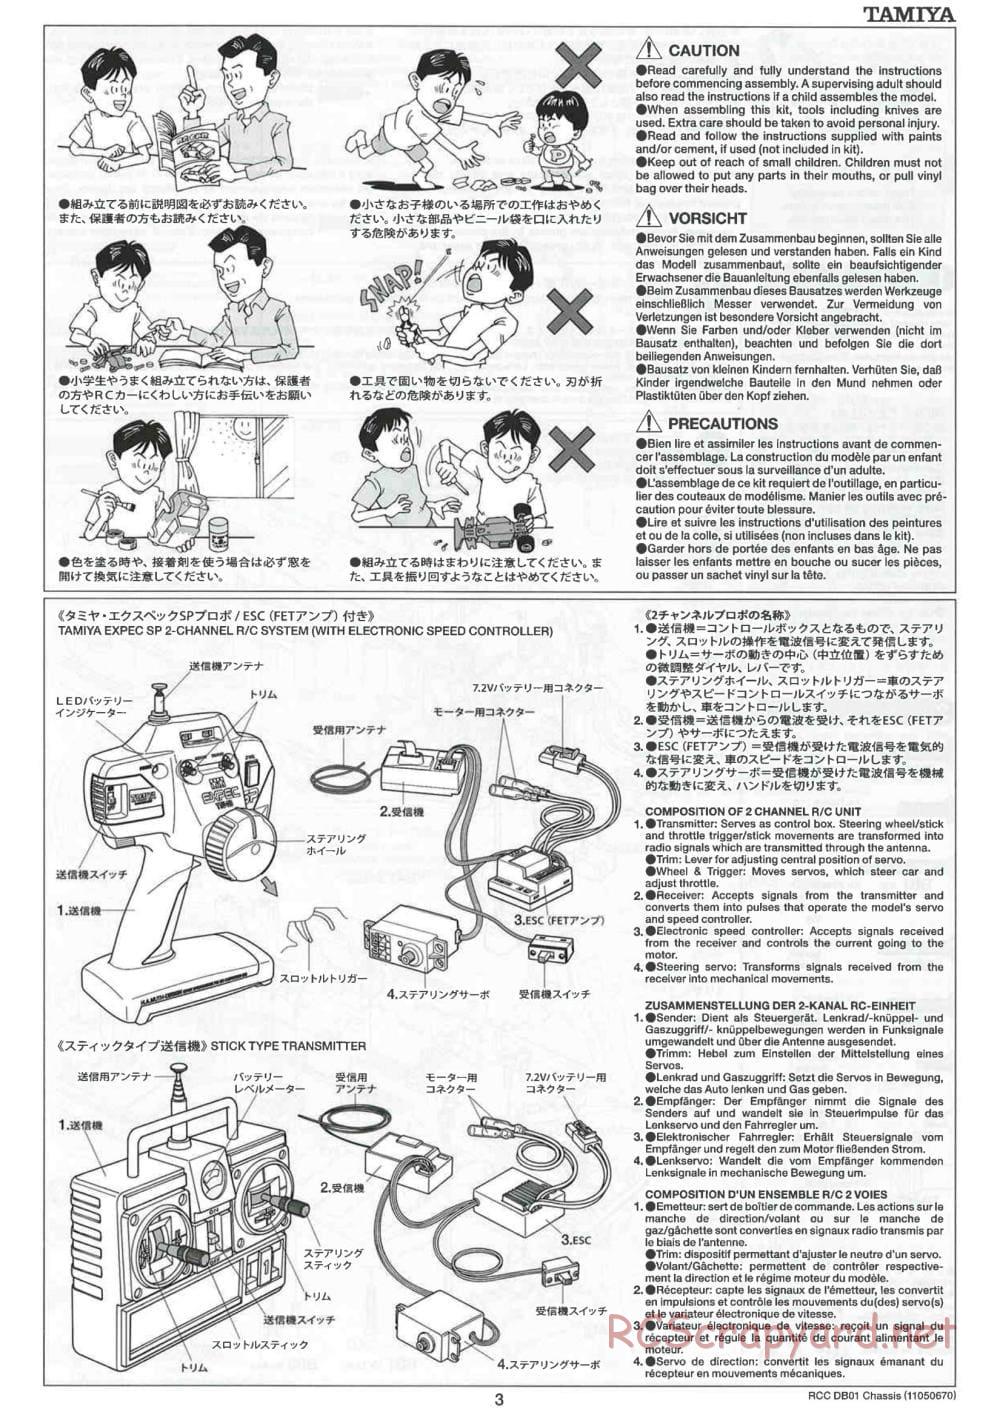 Tamiya - DB-01 Chassis - Manual - Page 3